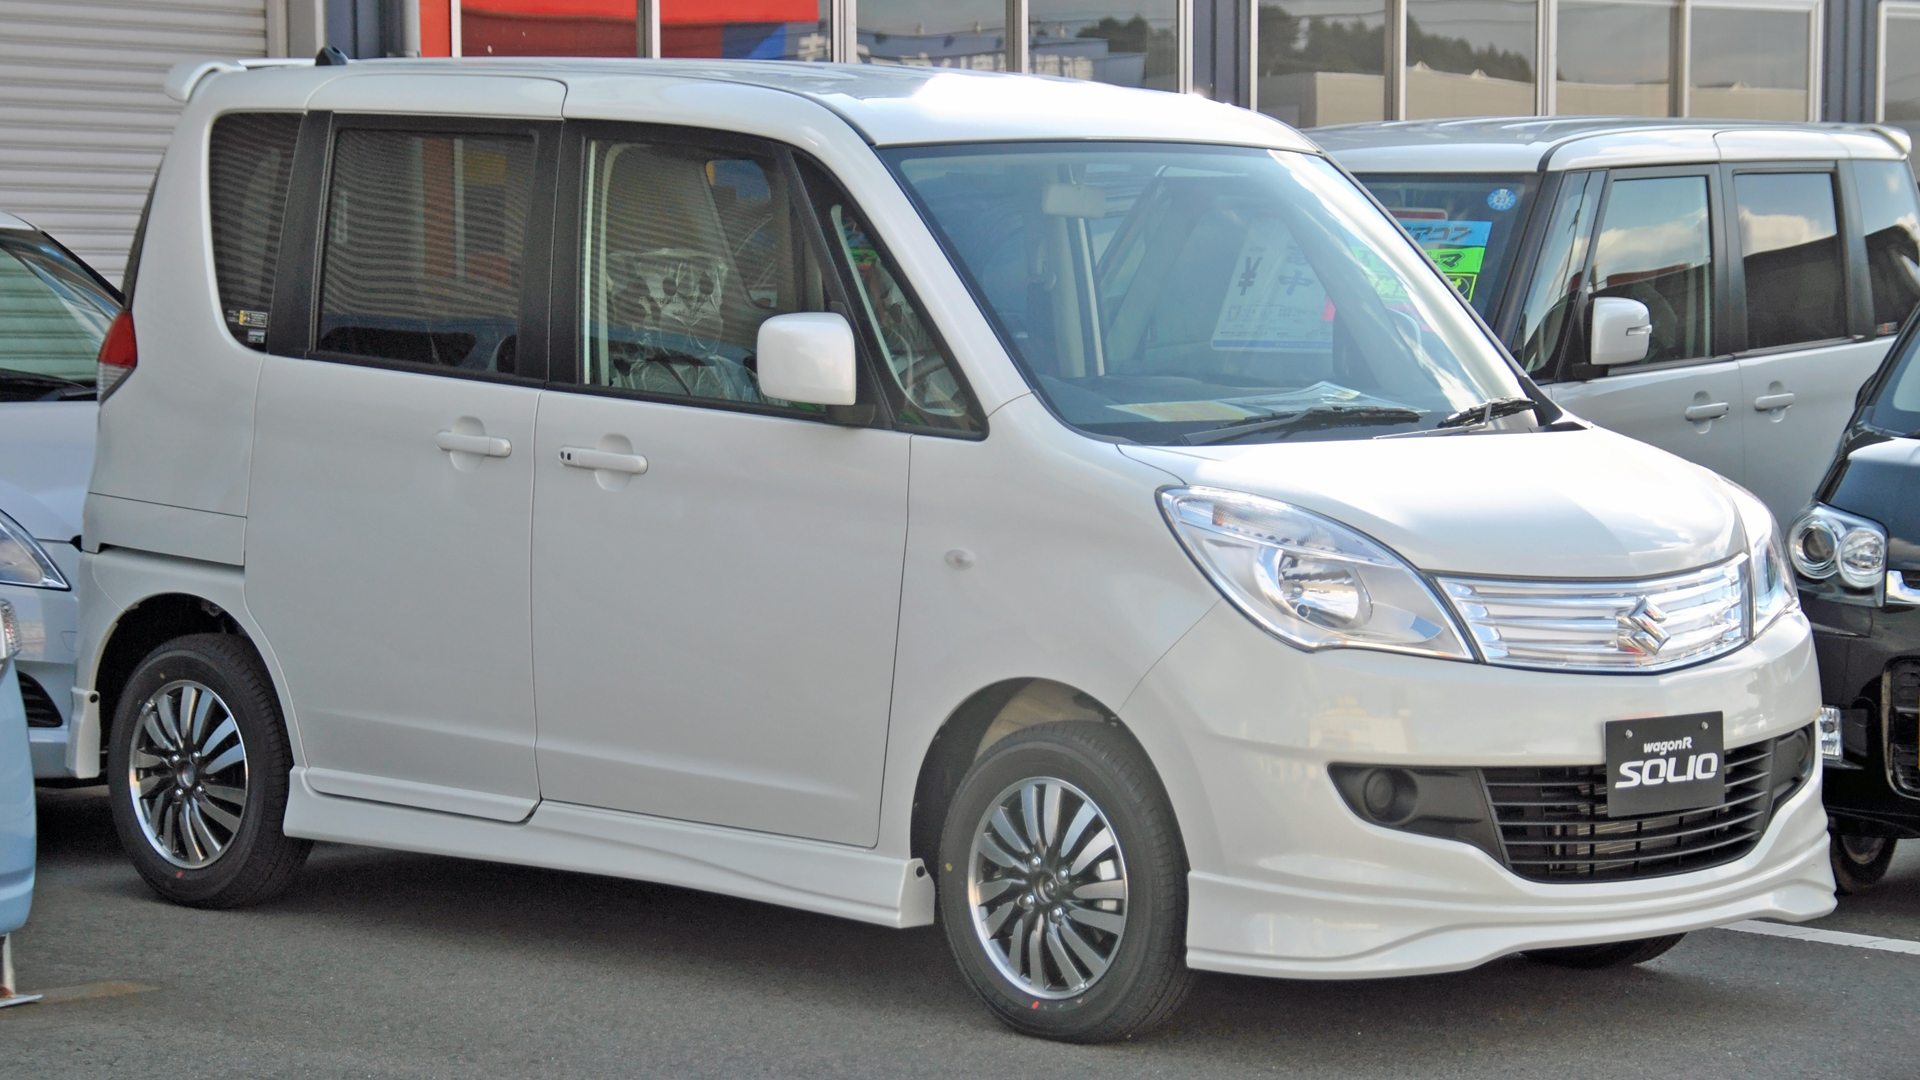 Suzuki Solio